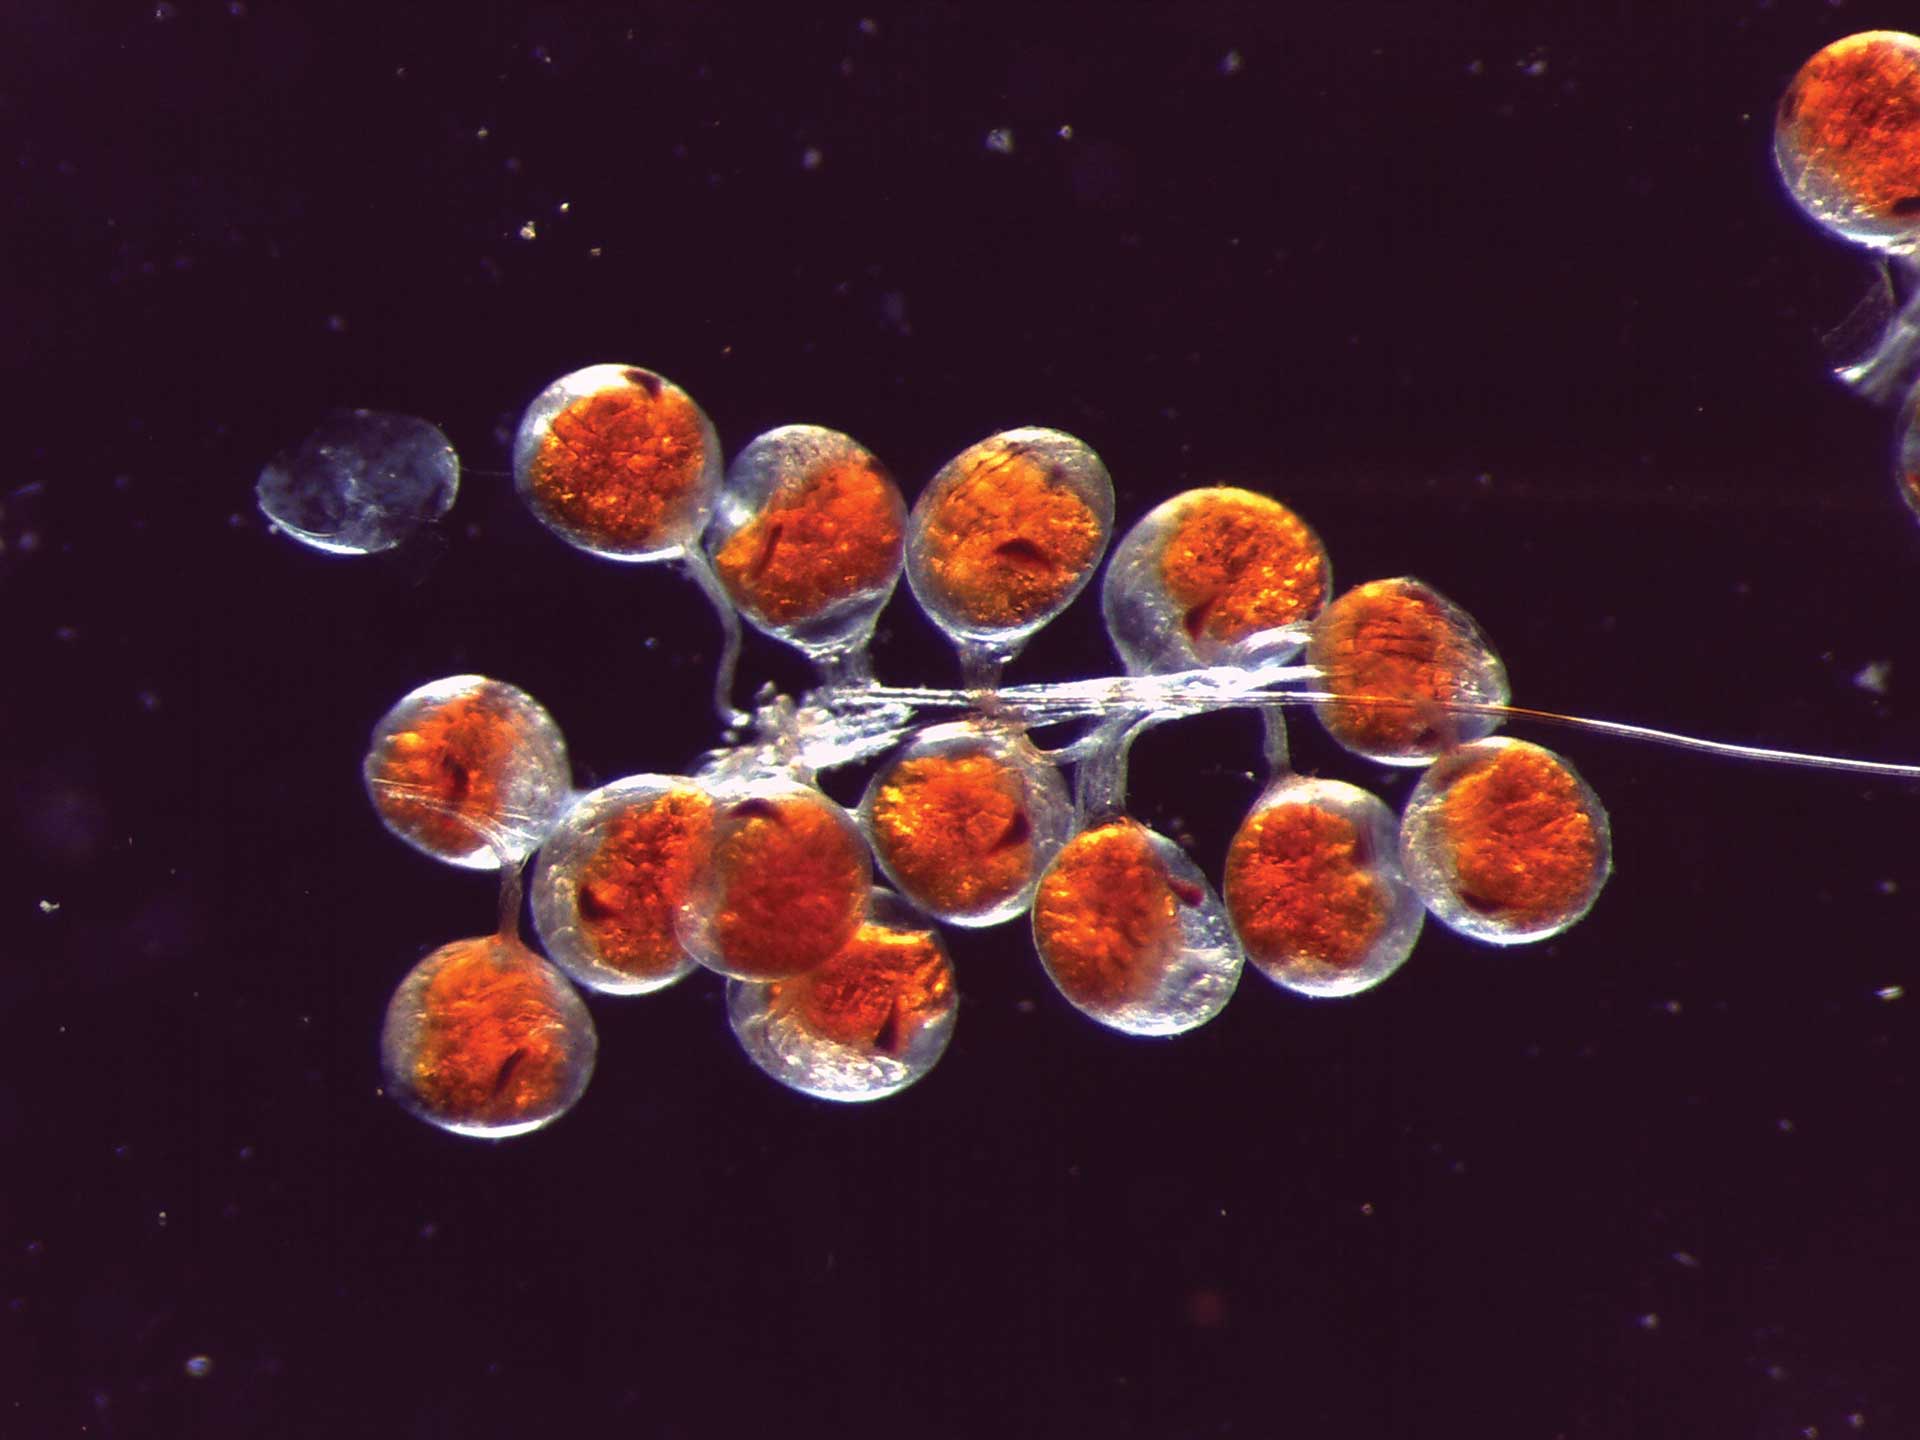 Embryonen der Seespinne bei Durchlicht im Dunkelfeld. Aufgenommen mit ZEISS Stemi 508